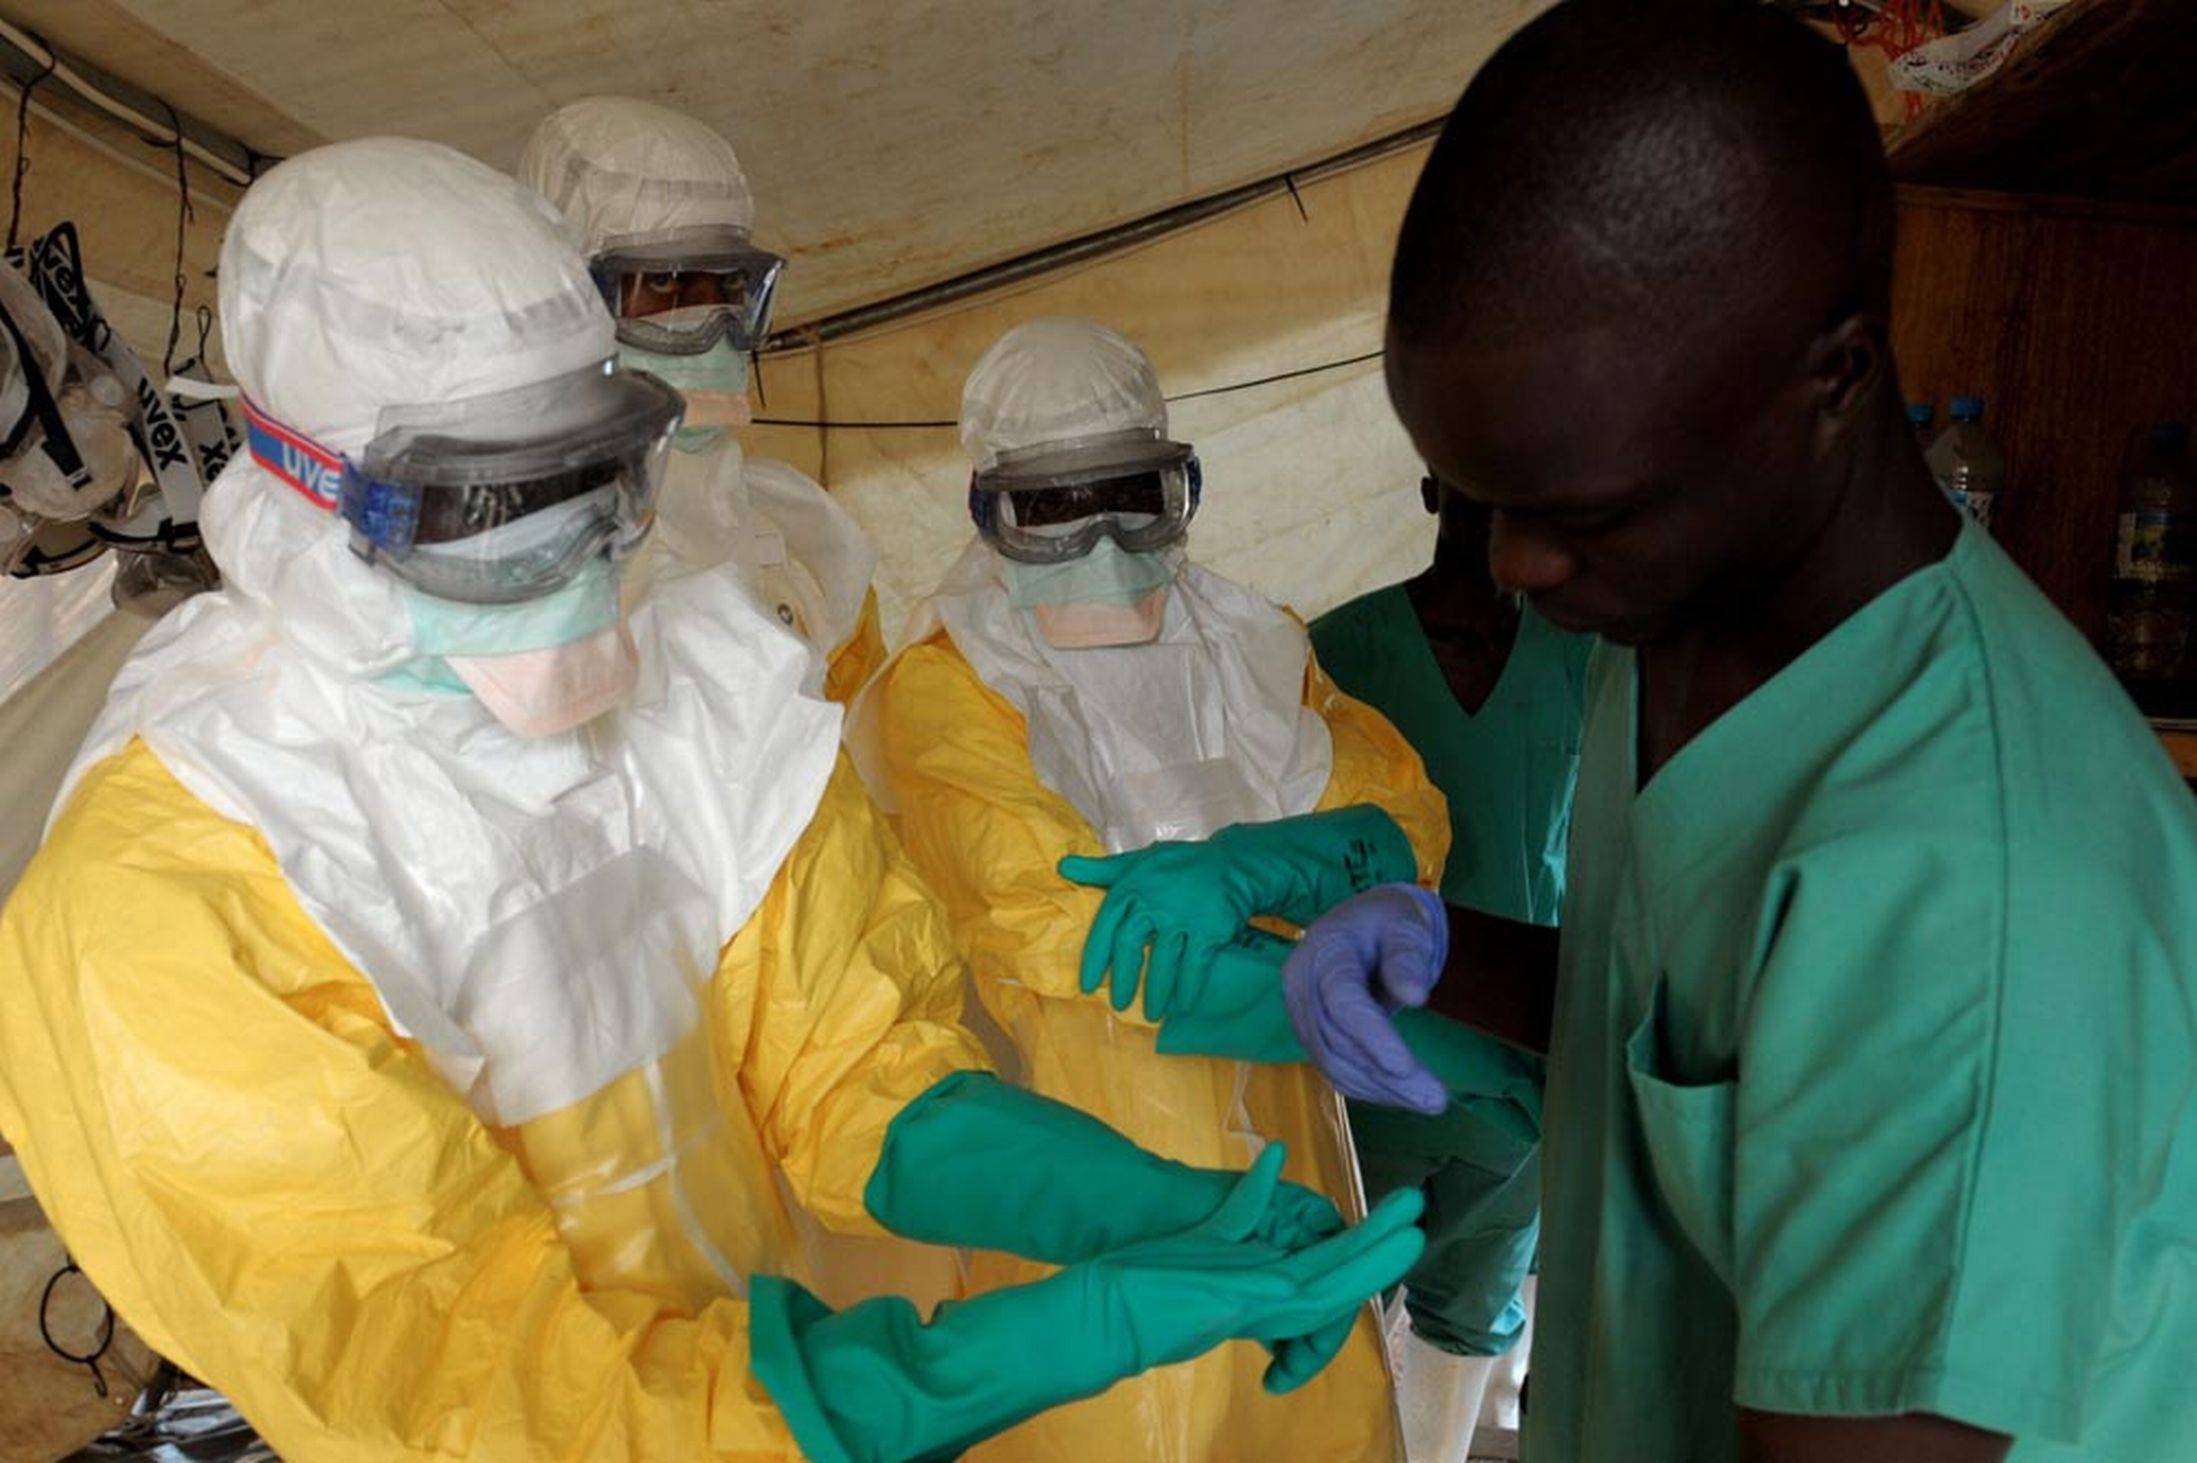 Donantes interesados en financiar terapias sanguíneas para atajar el ébola